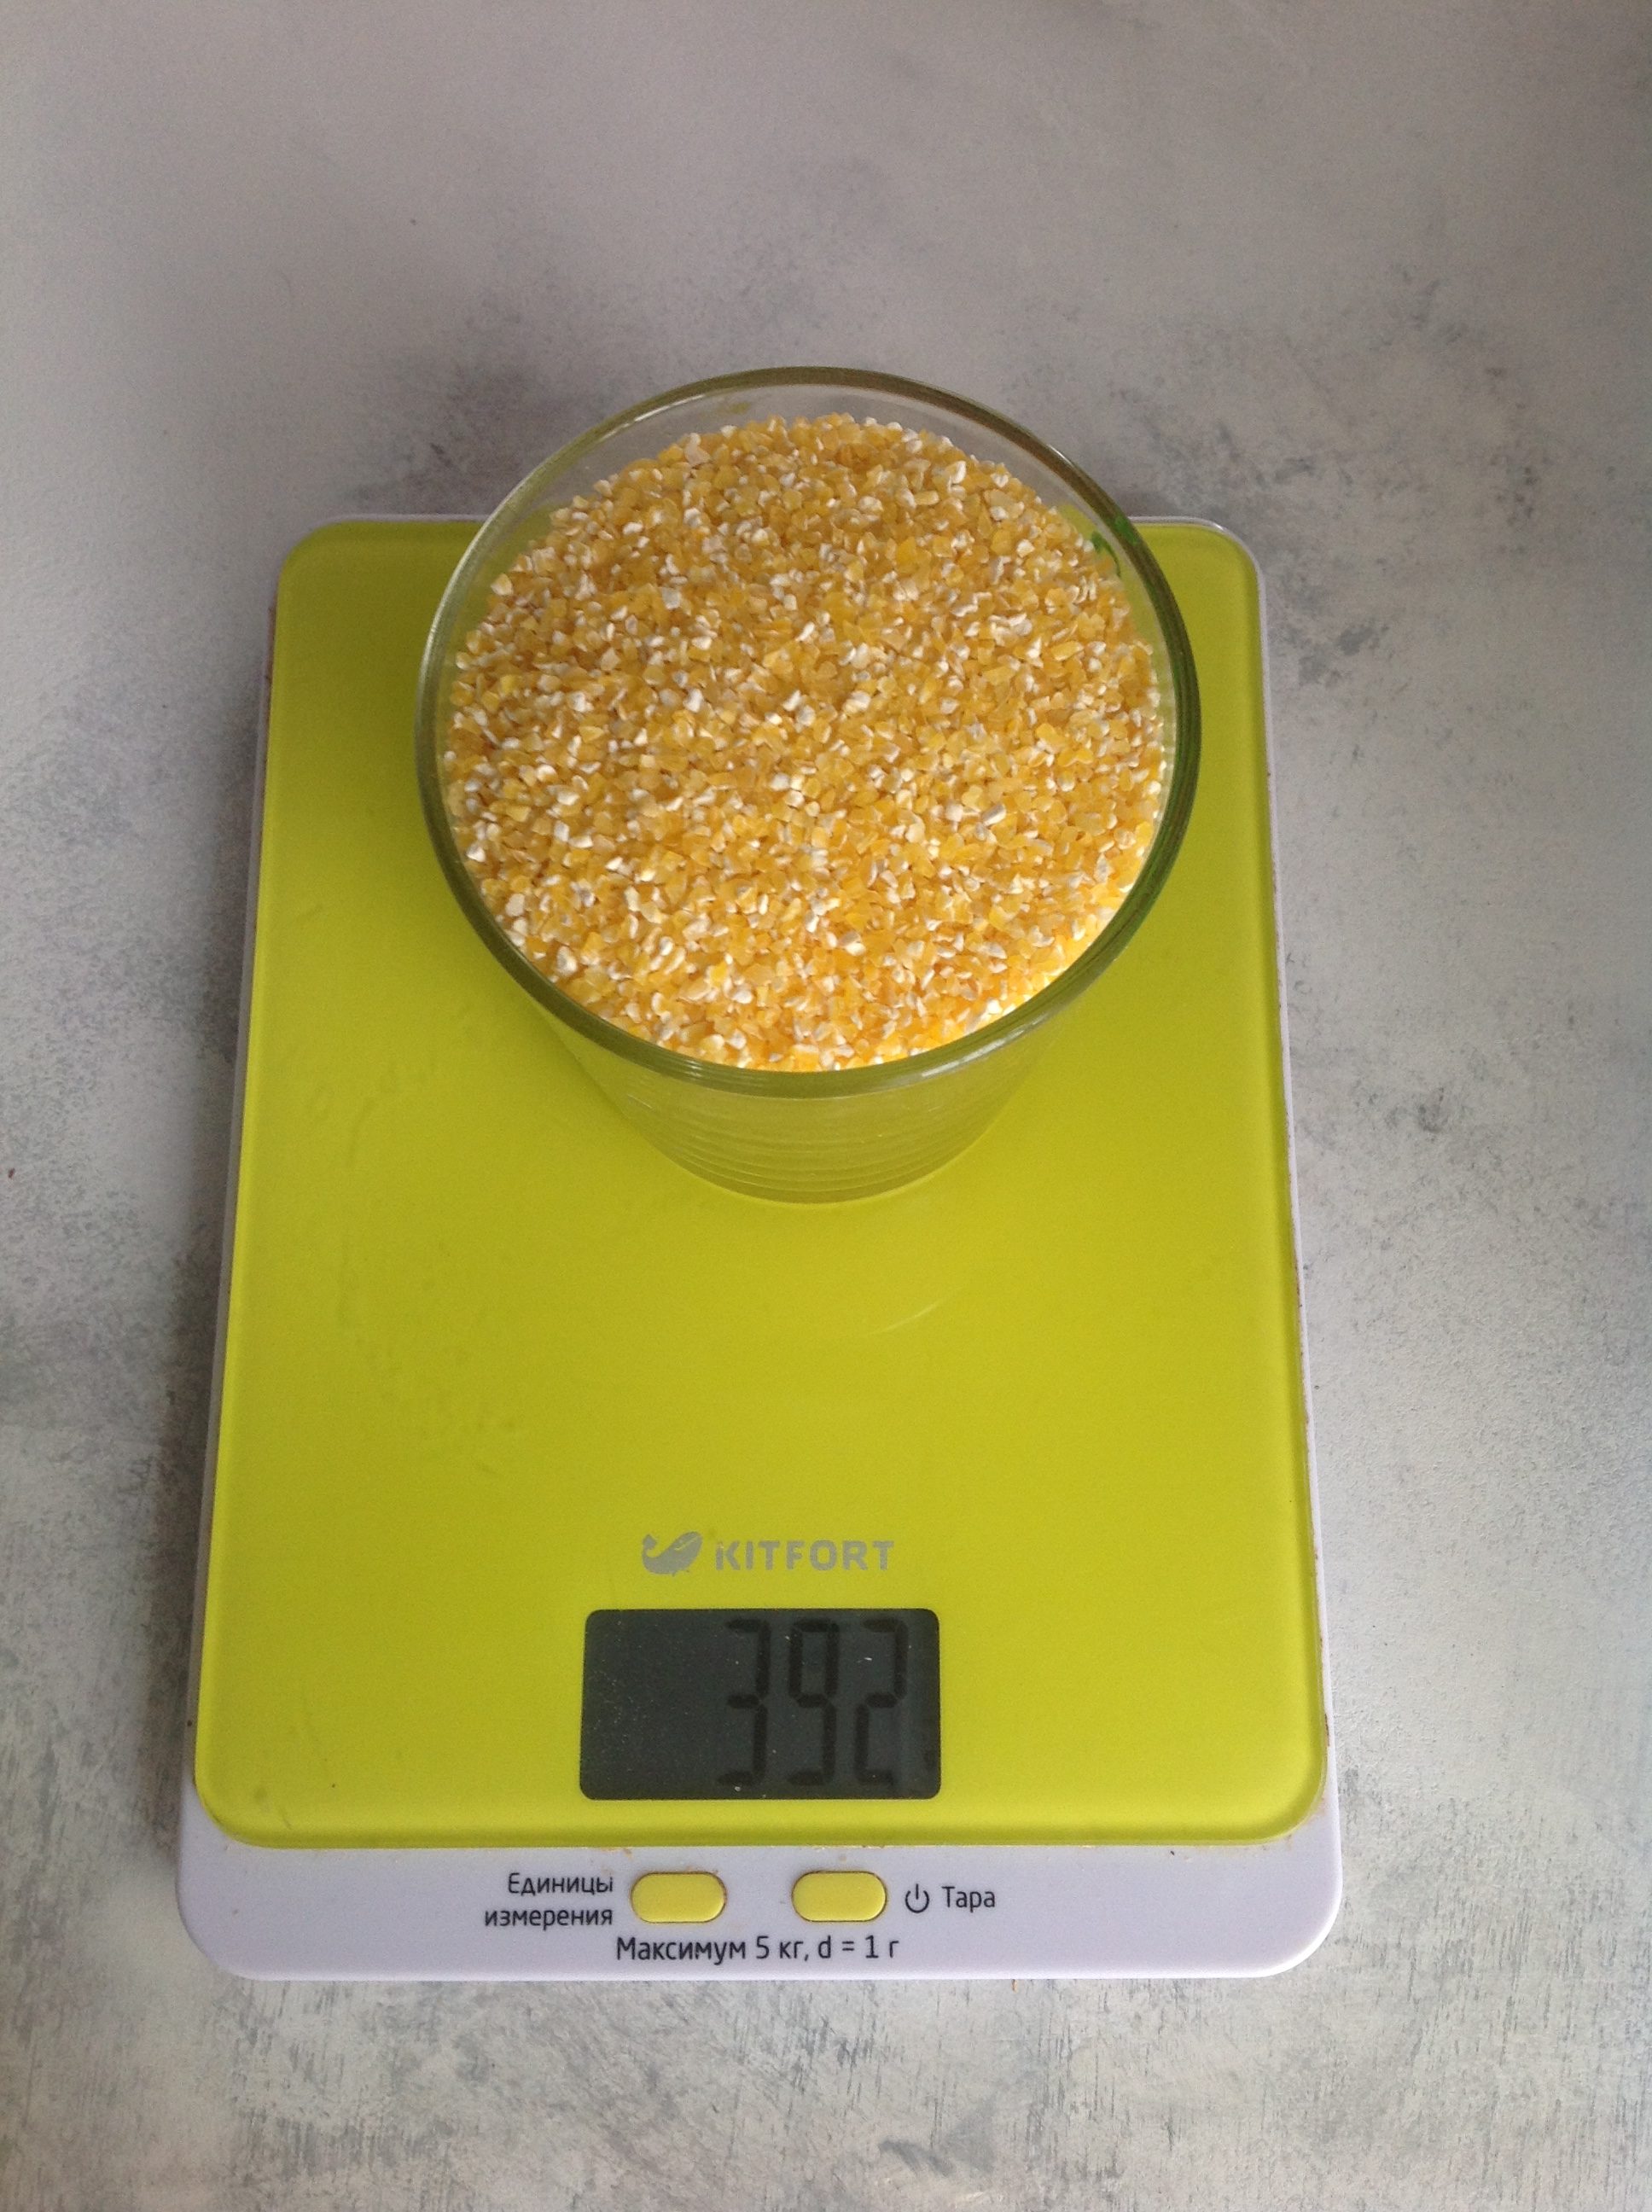 Kurutulmuş mısır unu 250 ml'lik bir bardakta ne kadar ağırlığa sahiptir?